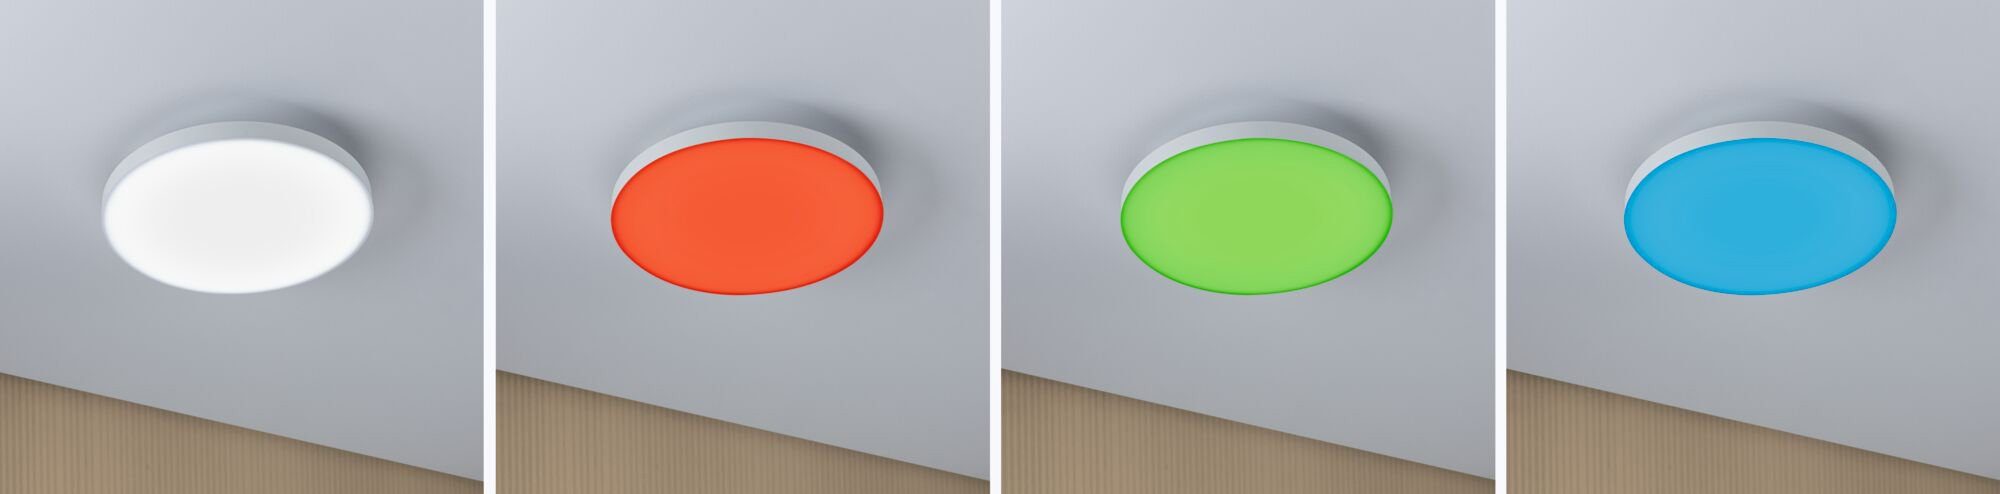 LED Warmweiß Paulmann integriert, Velora, fest LED Panel